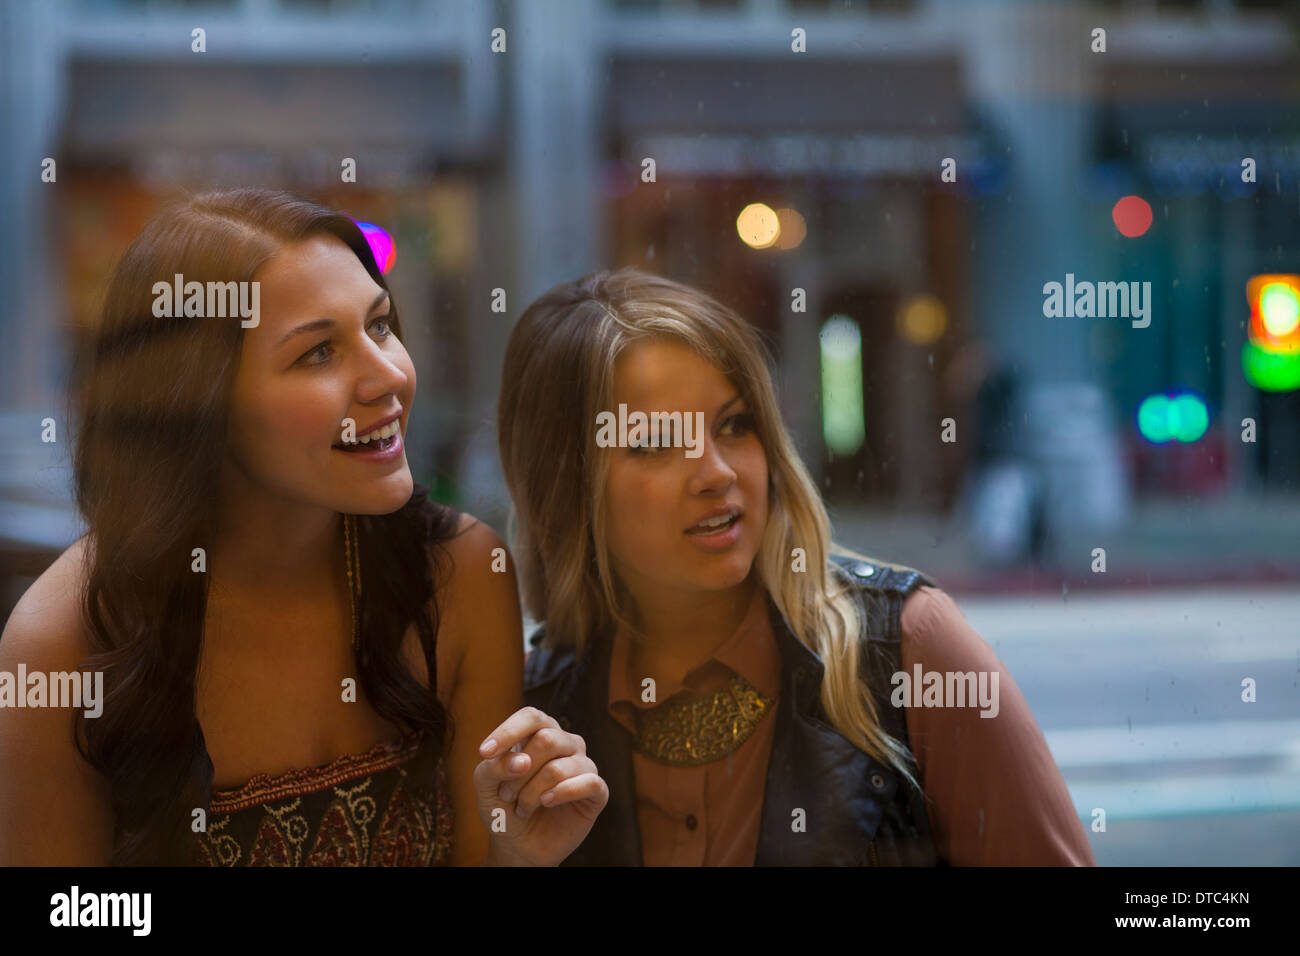 Young women window shopping Stock Photo